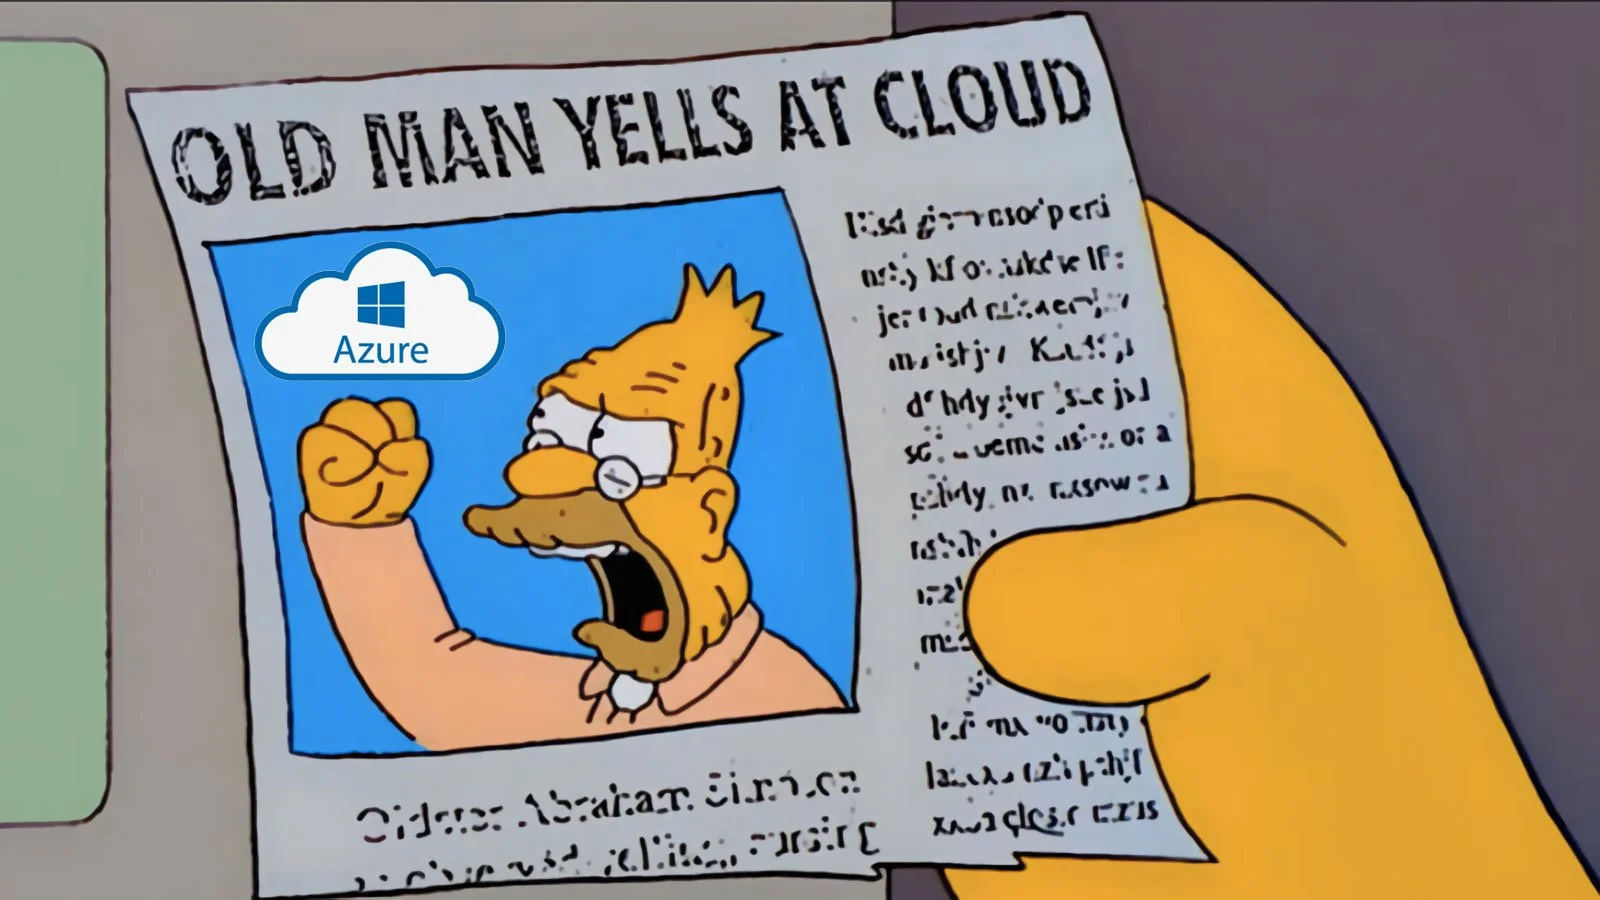 old_man_yells_at_cloud.png